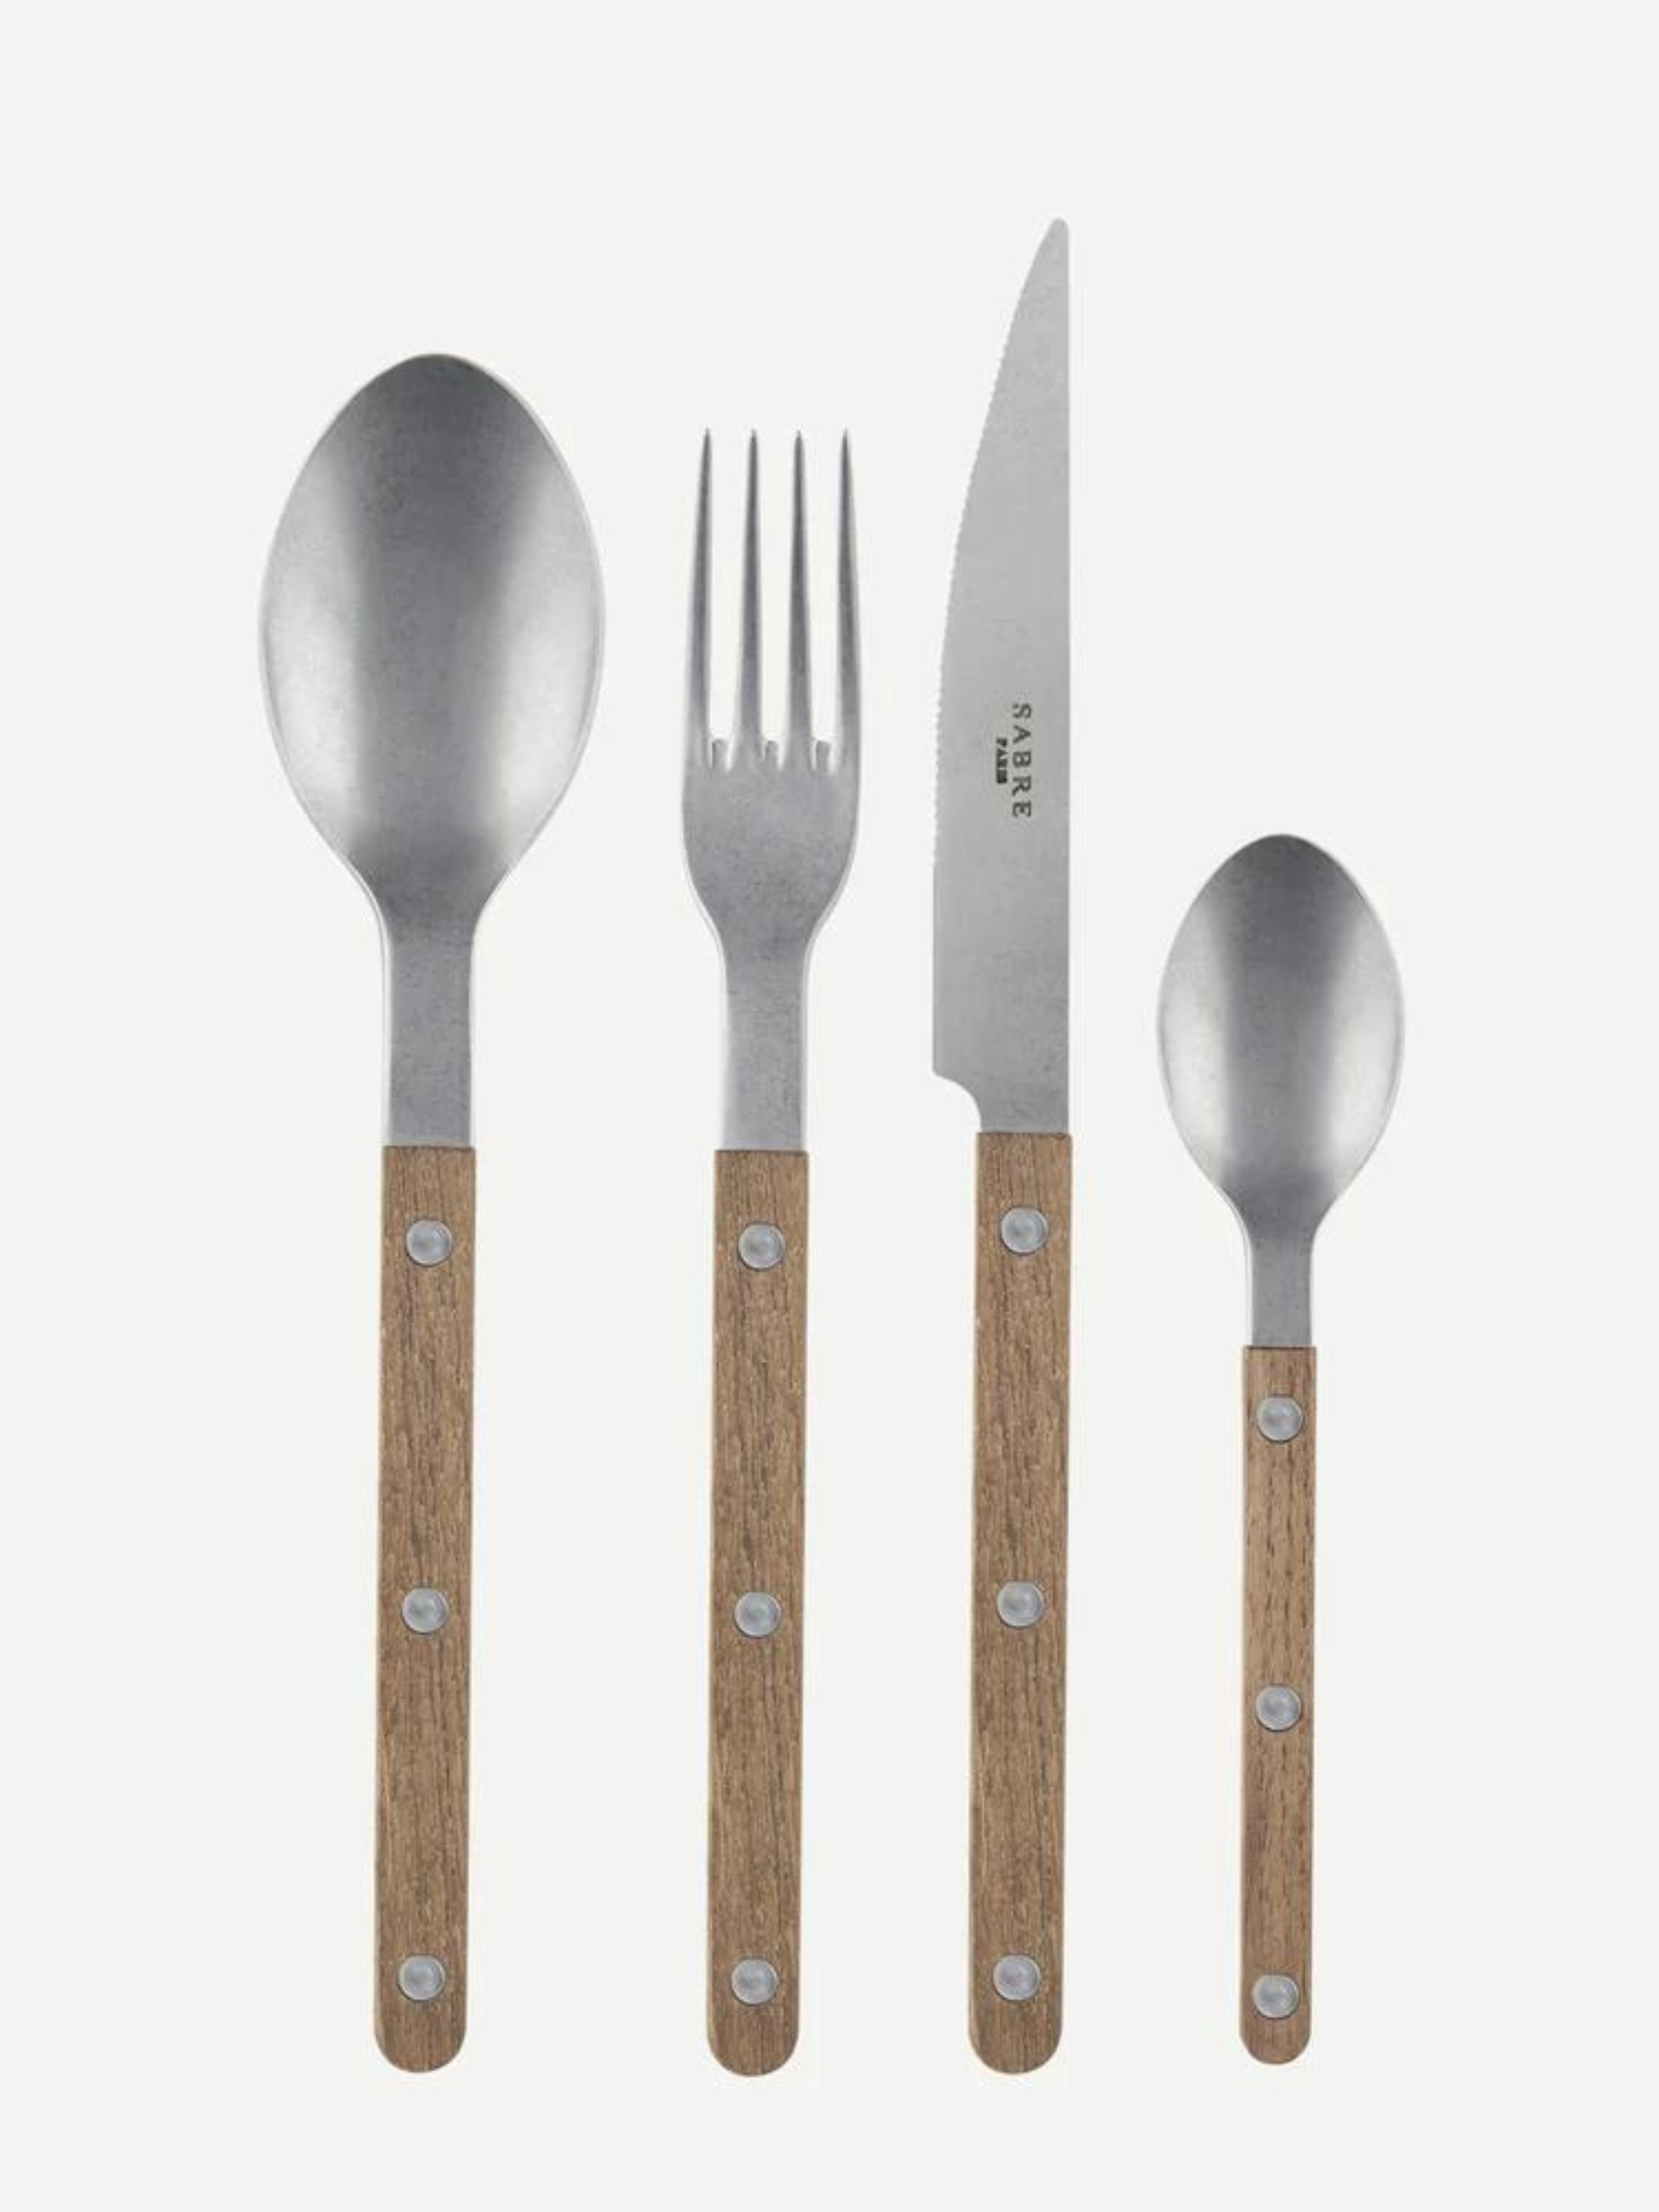 SABRE Stainless Steel Vintage Cutlery Set